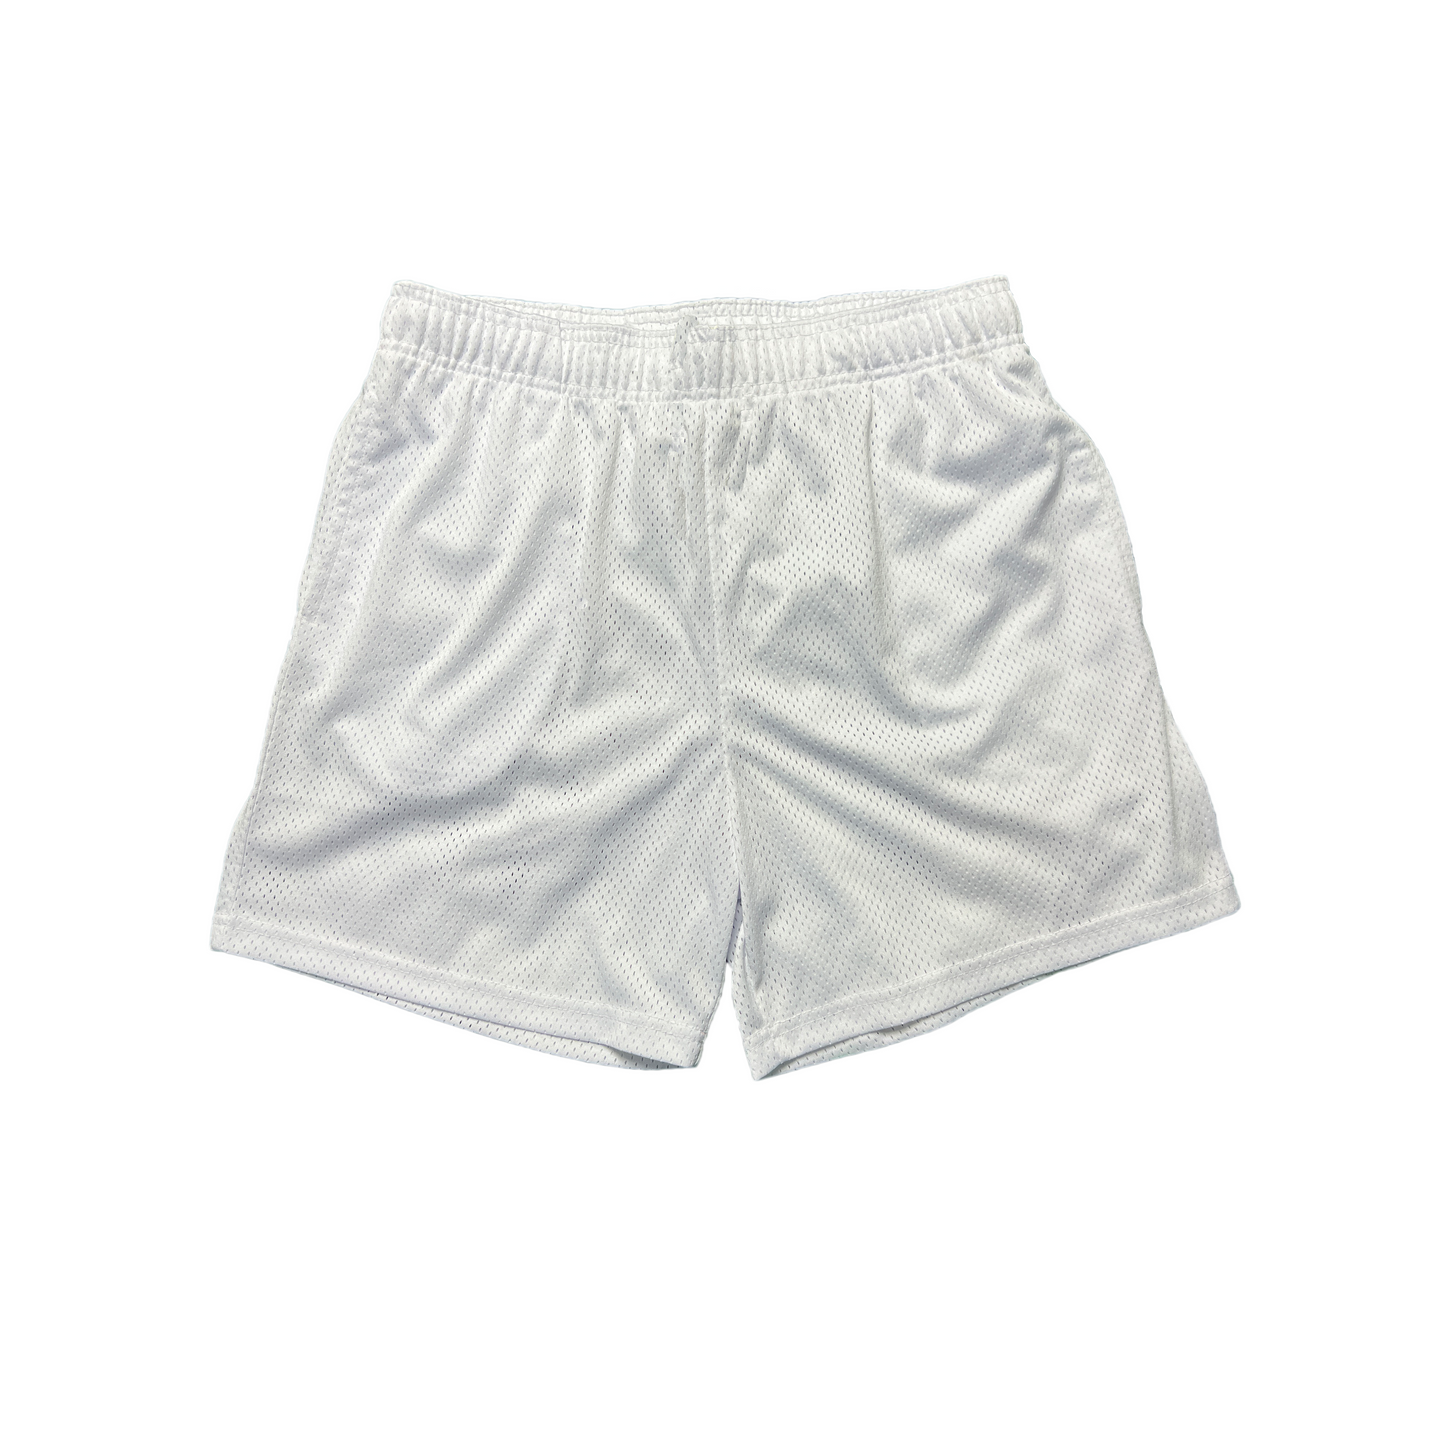 White "rose mary" athletic shorts